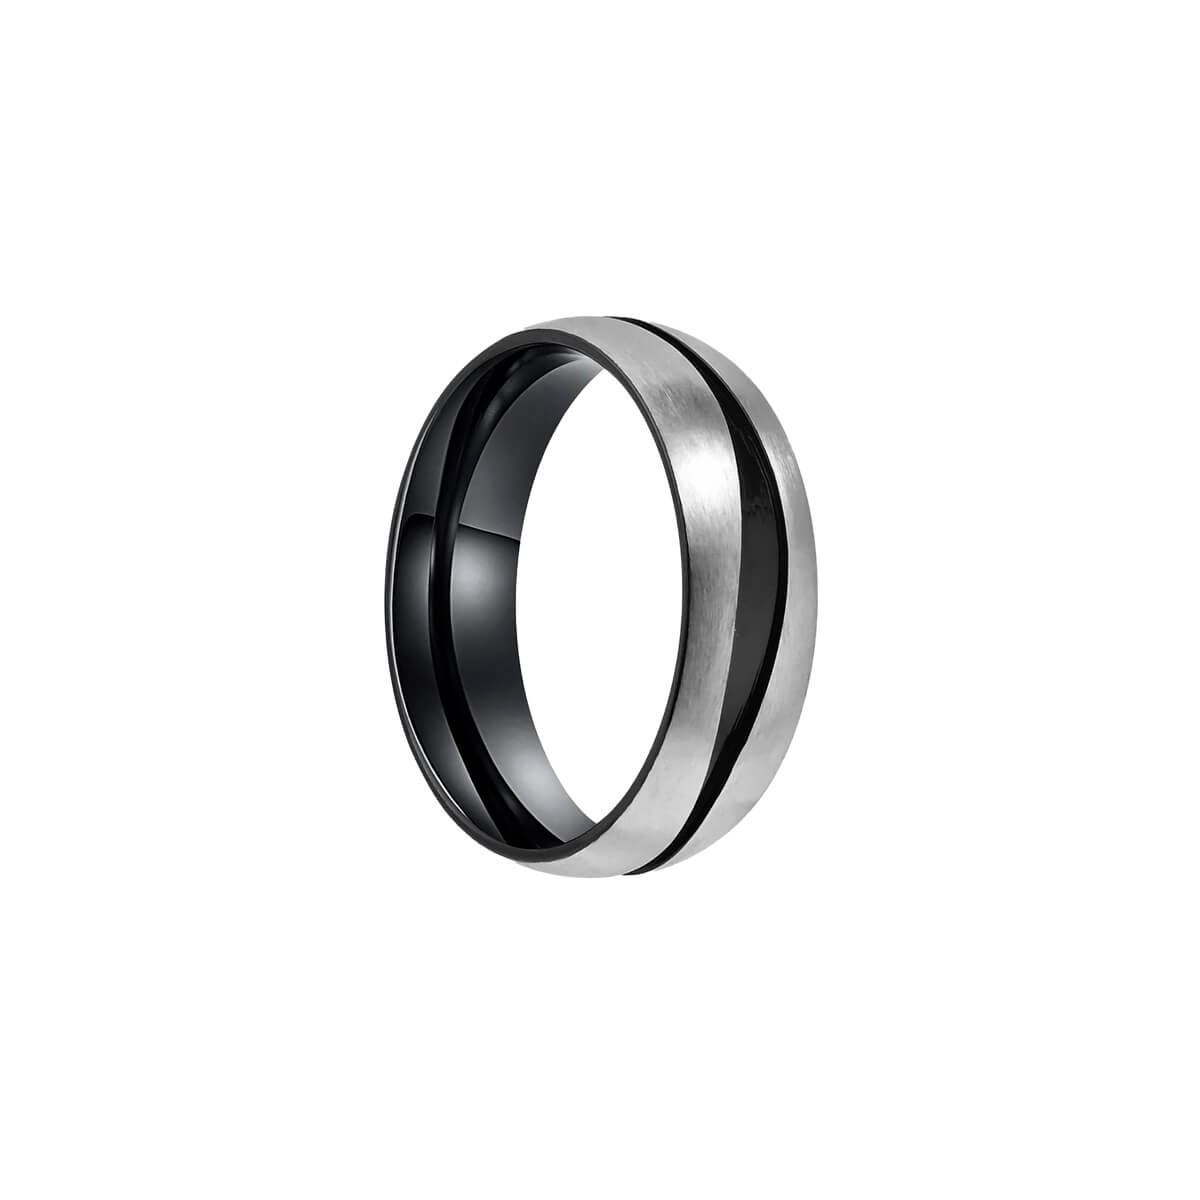 Vågig svart räfflad ring av borstat stål (stål 316L)